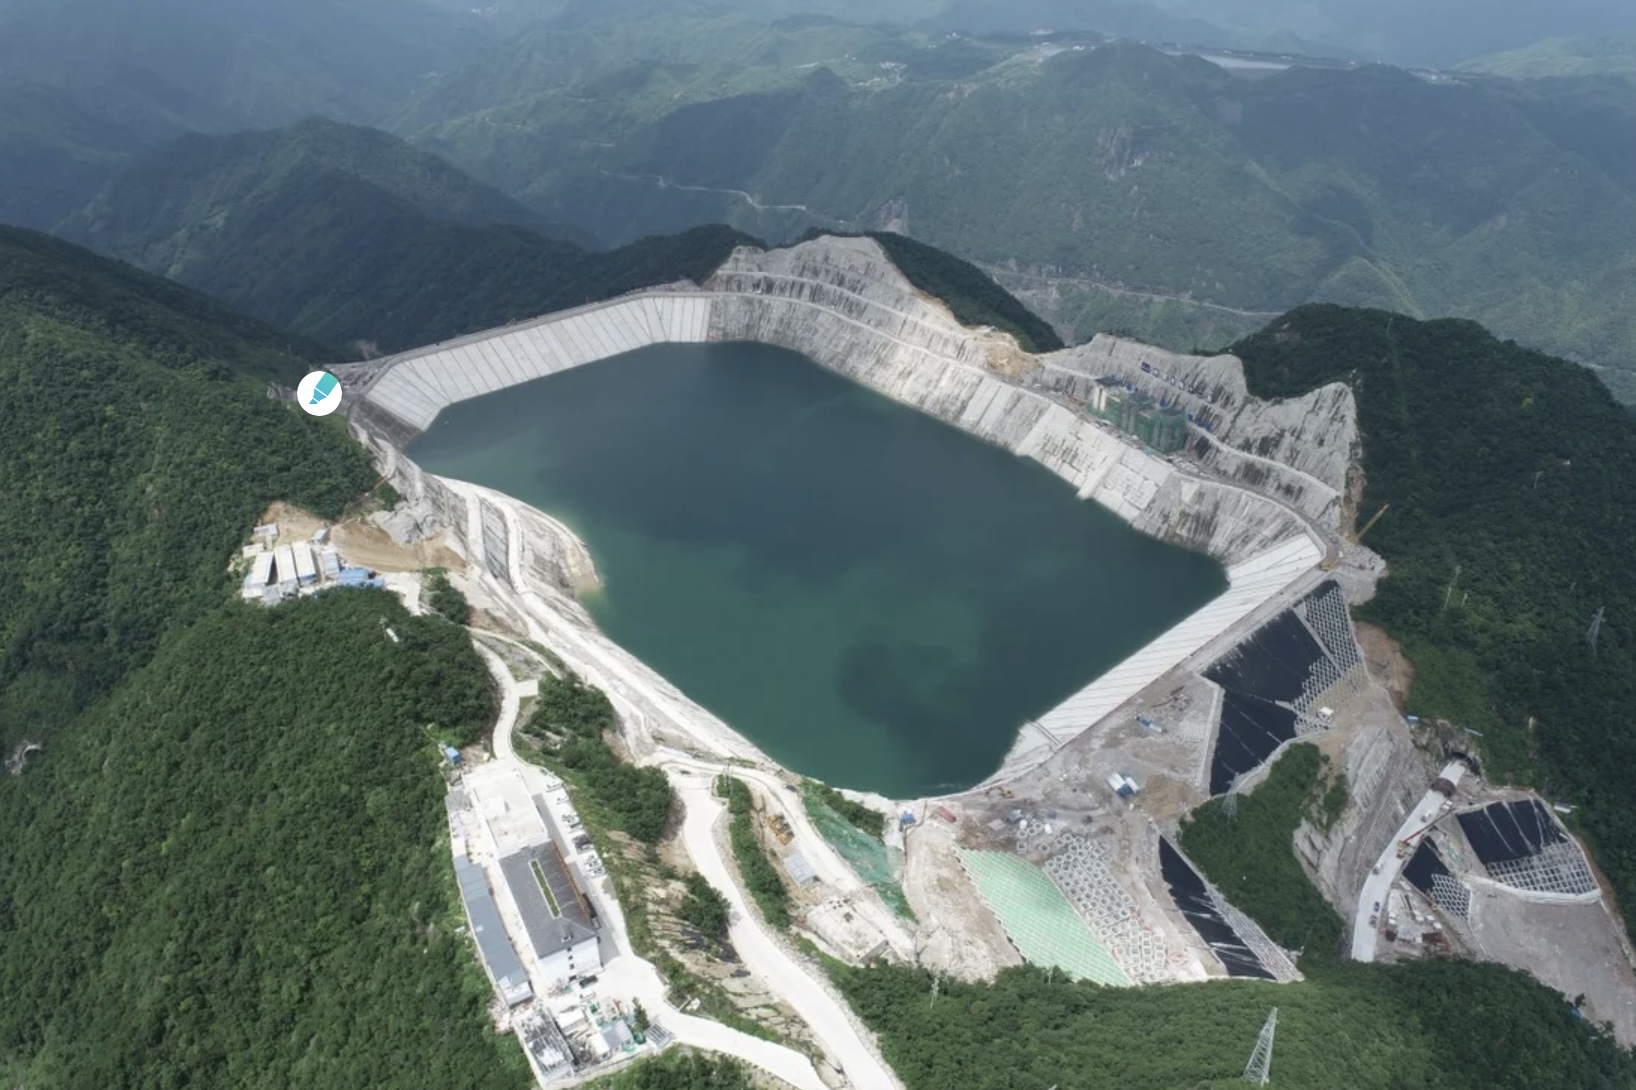 Trung Quốc đang phát triển các dự án điện tích năng, như dự án trong ảnh tại tỉnh Chiết Giang, để đạt được mục tiêu trung hòa carbon. Ảnh chụp màn hình